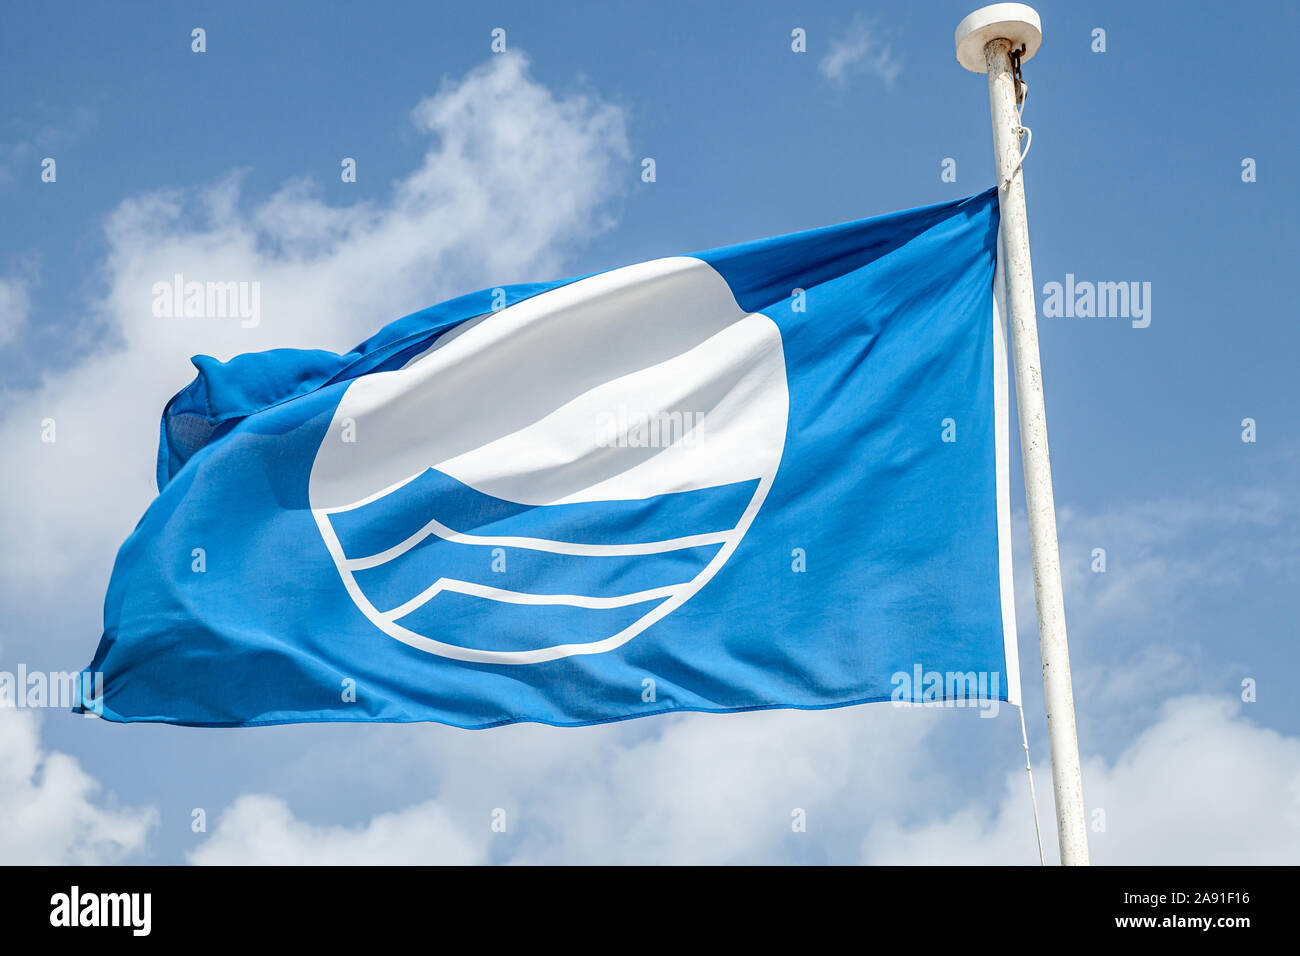 Strand mit Blauer Flagge. Nahaufnahme einer Fahne winken unter blauen bewölkten Himmel Stockfoto